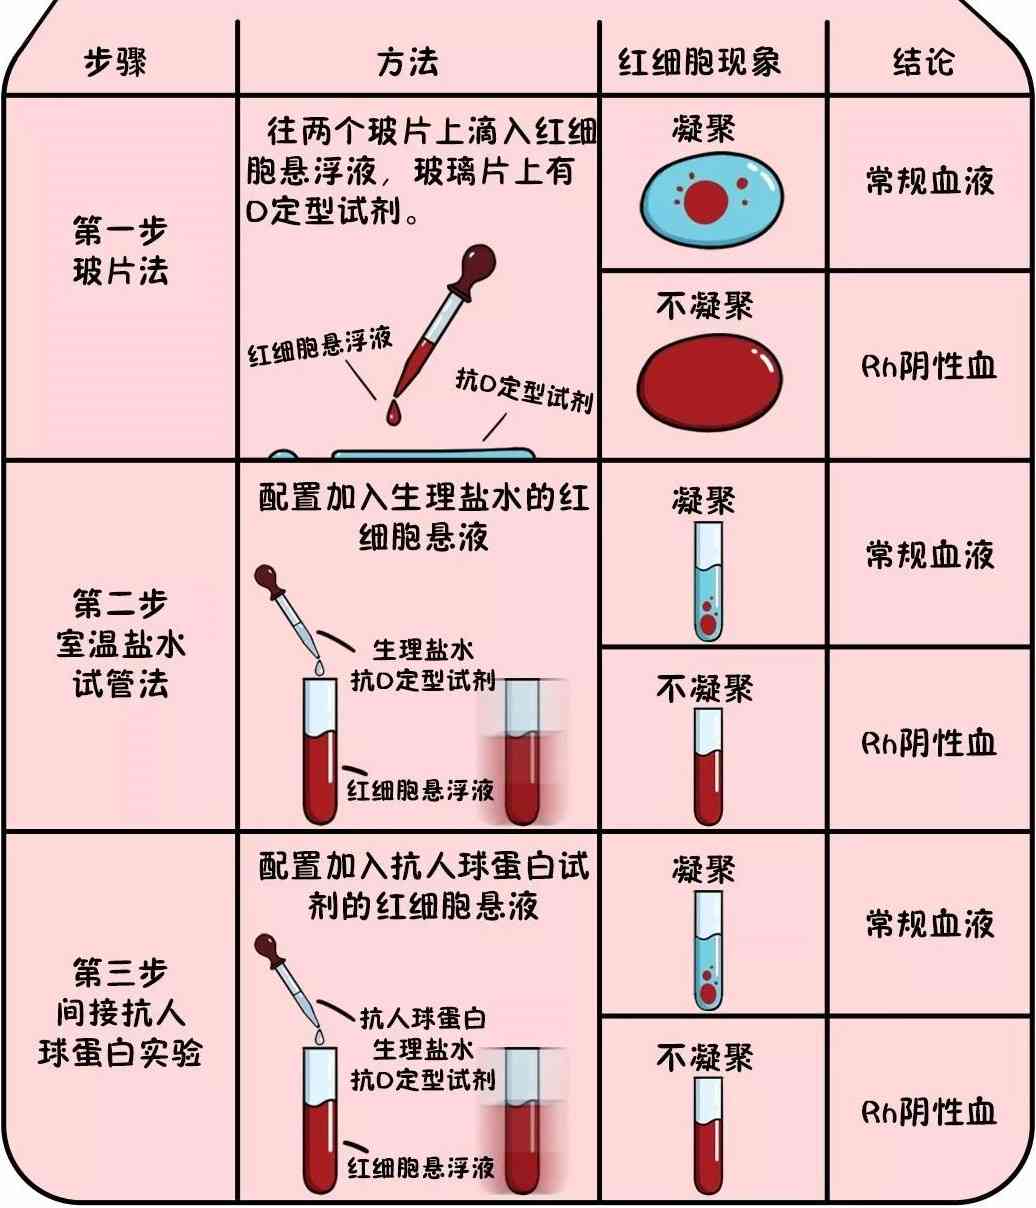 稀有10大血型遗传规律冷知识rh阴性阳性都是熊猫血